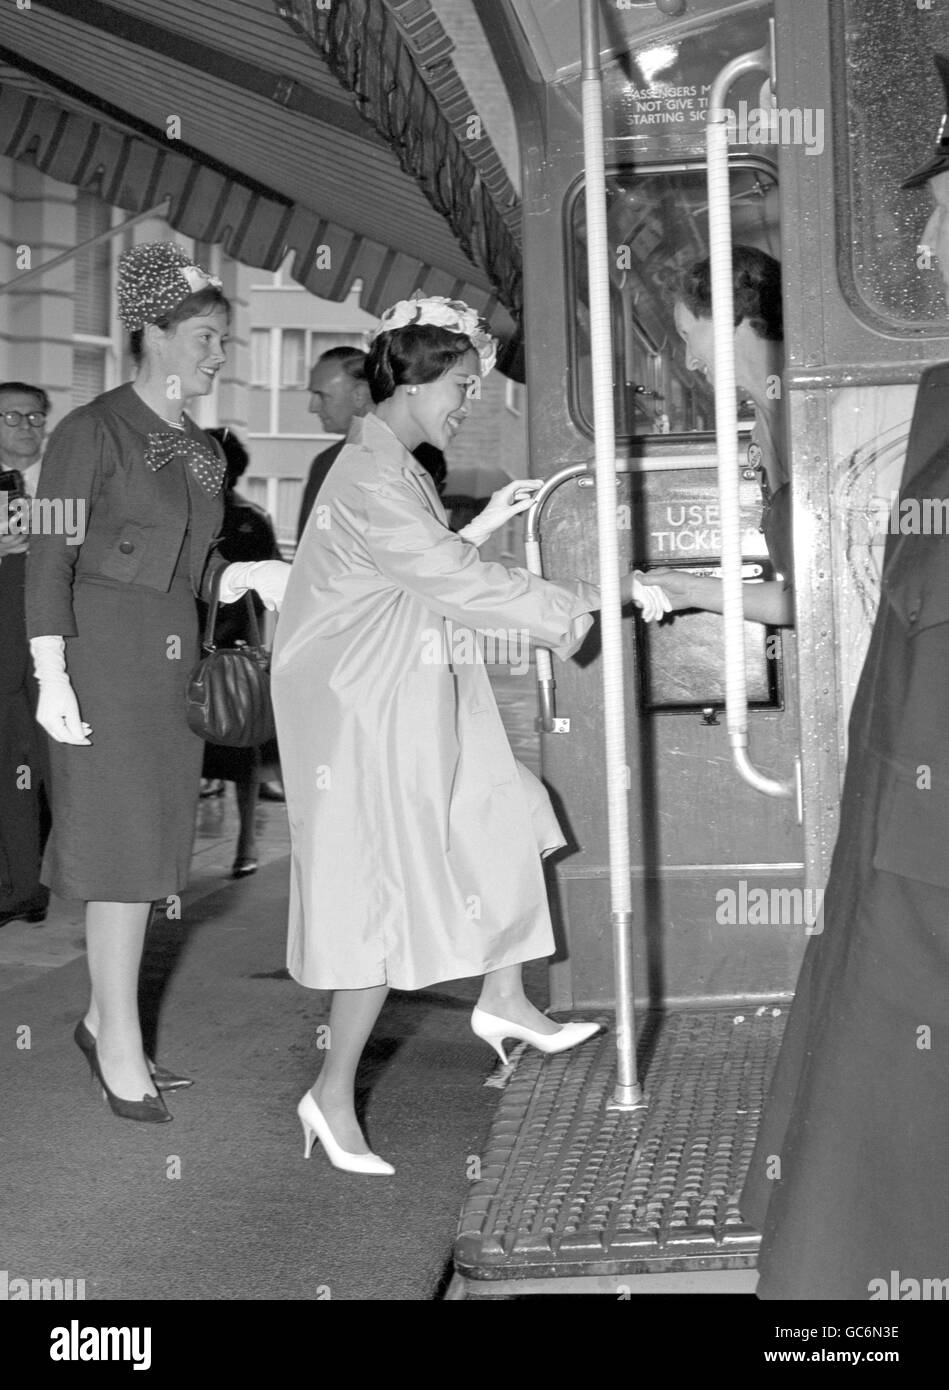 La reine Sirikit, consort du monarque thaïlandais le roi Bhumibol Aduladej, monte à bord d'un bus londonien après avoir assisté à une réception à l'ambassade de Thaïlande à Kensington, Londres. On croyait que le bus, en location privée, emportait la Reine pour une visite de Londres. Banque D'Images